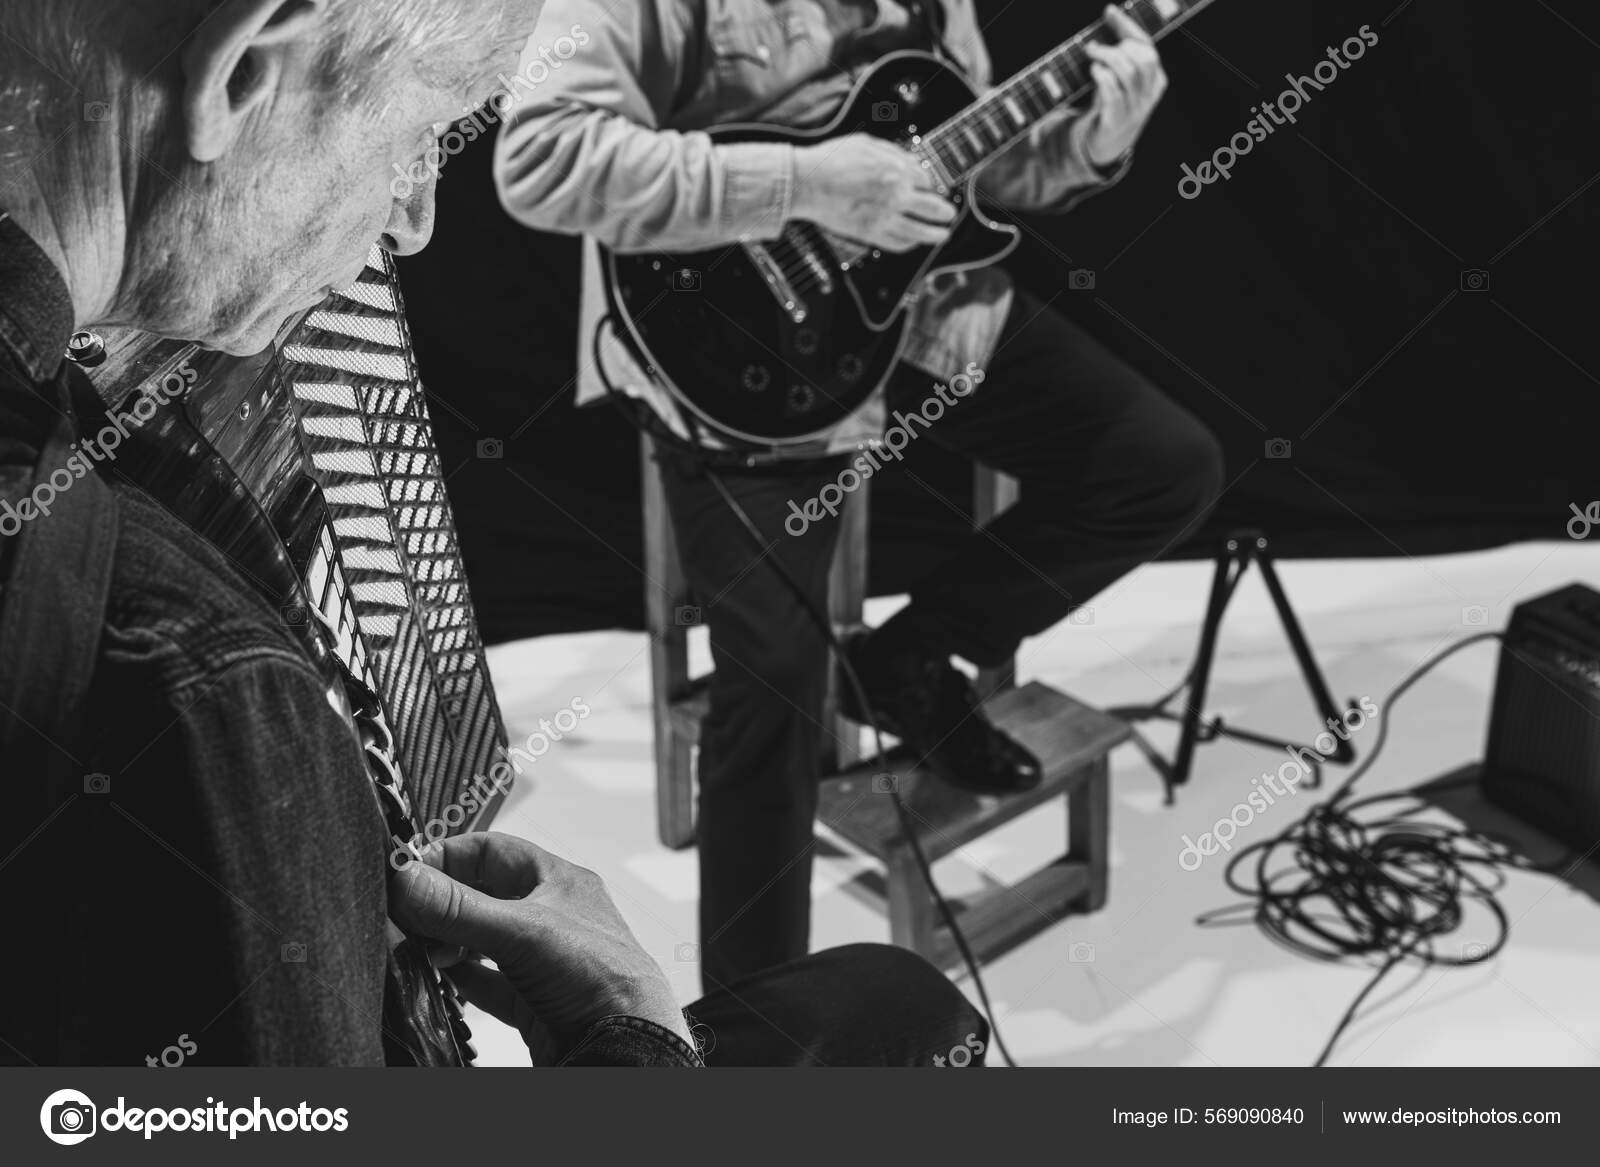 Broom scaring Stue To ældre mænd, musikere spiller elektrisk guitar og harmonika. Gentagelse  af retro musik band på musikstudiet. Begrebet kunst, musik, stil og  skabelse. Monokrom — Stock-foto © vova130555@gmail.com #569090840